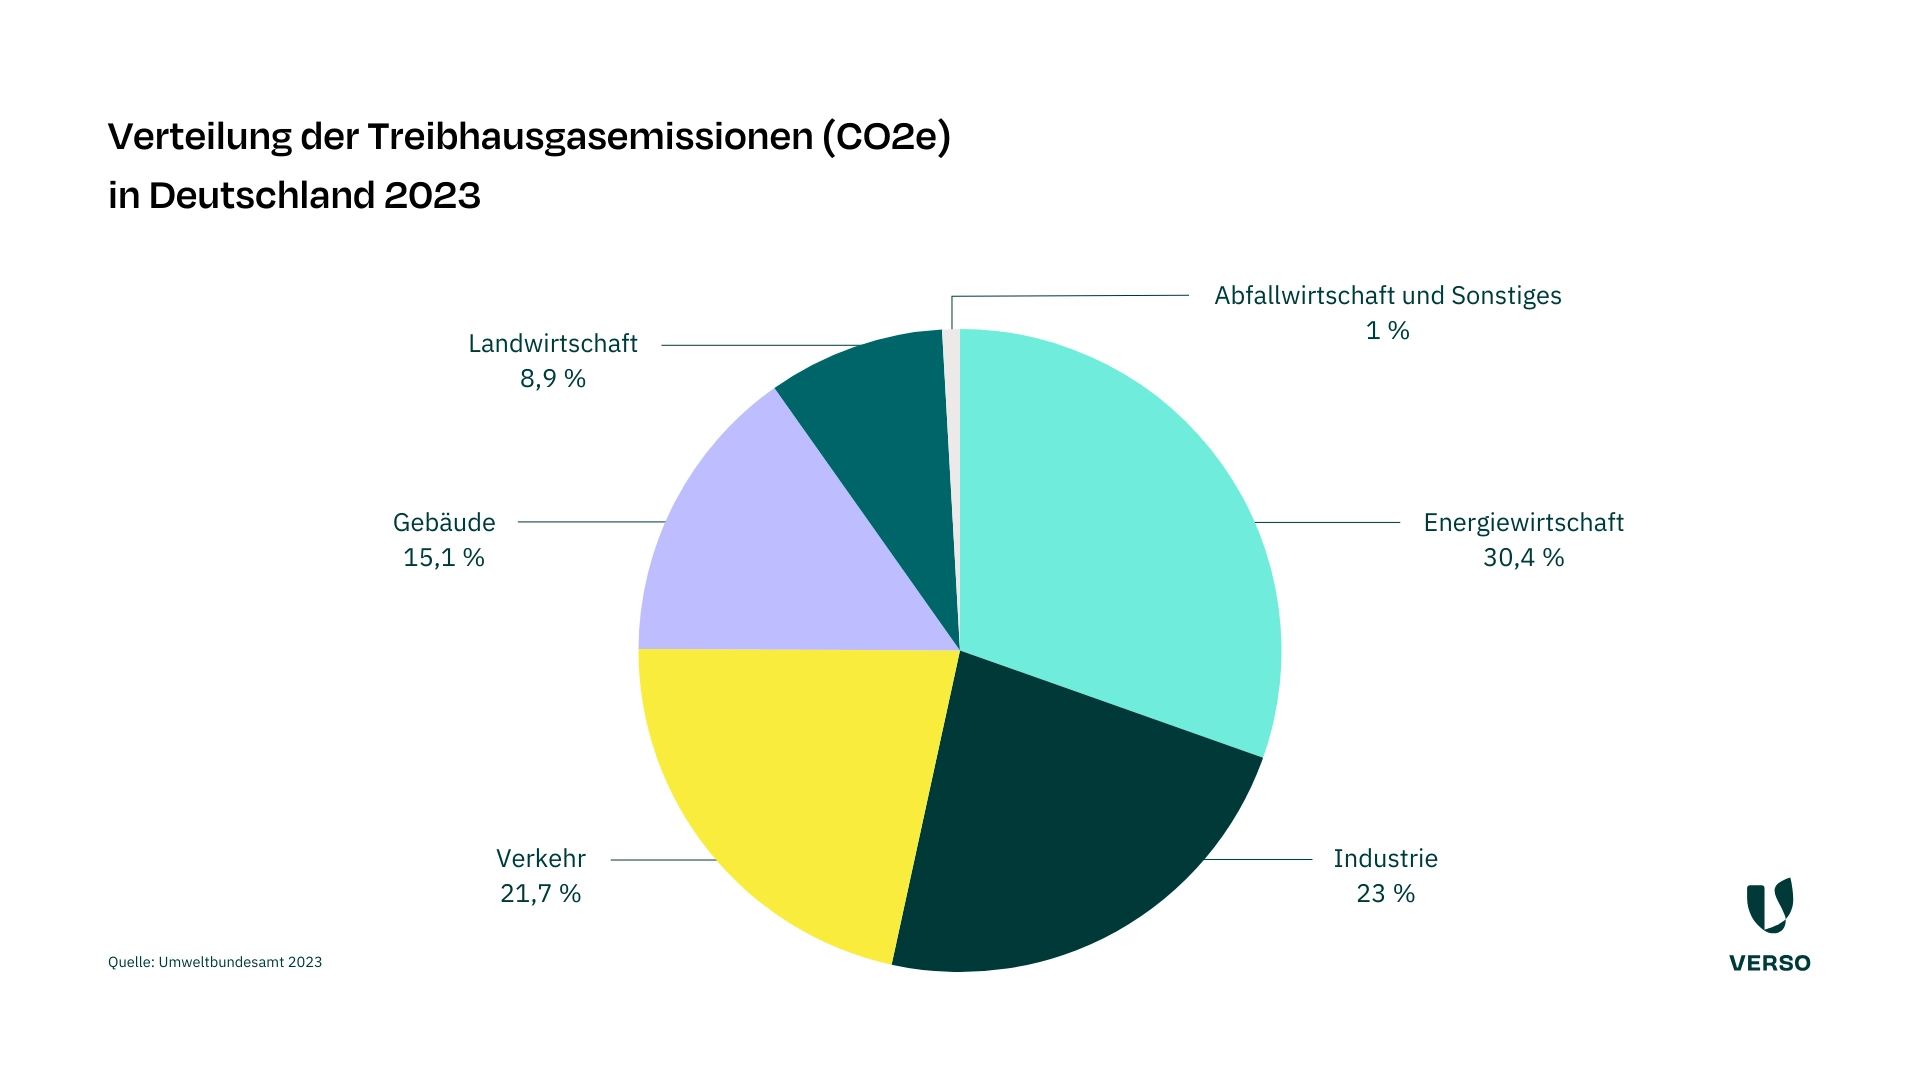 Laut Umweltbundesamt wurden im Jahr 2023 in Deutschland die meisten Treibhausgasemissionen (CO2e) in den Sektoren Energiewirtschaft und Industrie ausgestoßen. Danach folgen Verkehr, Gebäude, Landwirtschaft sowie Abfallwirtschaft und Sonstiges.